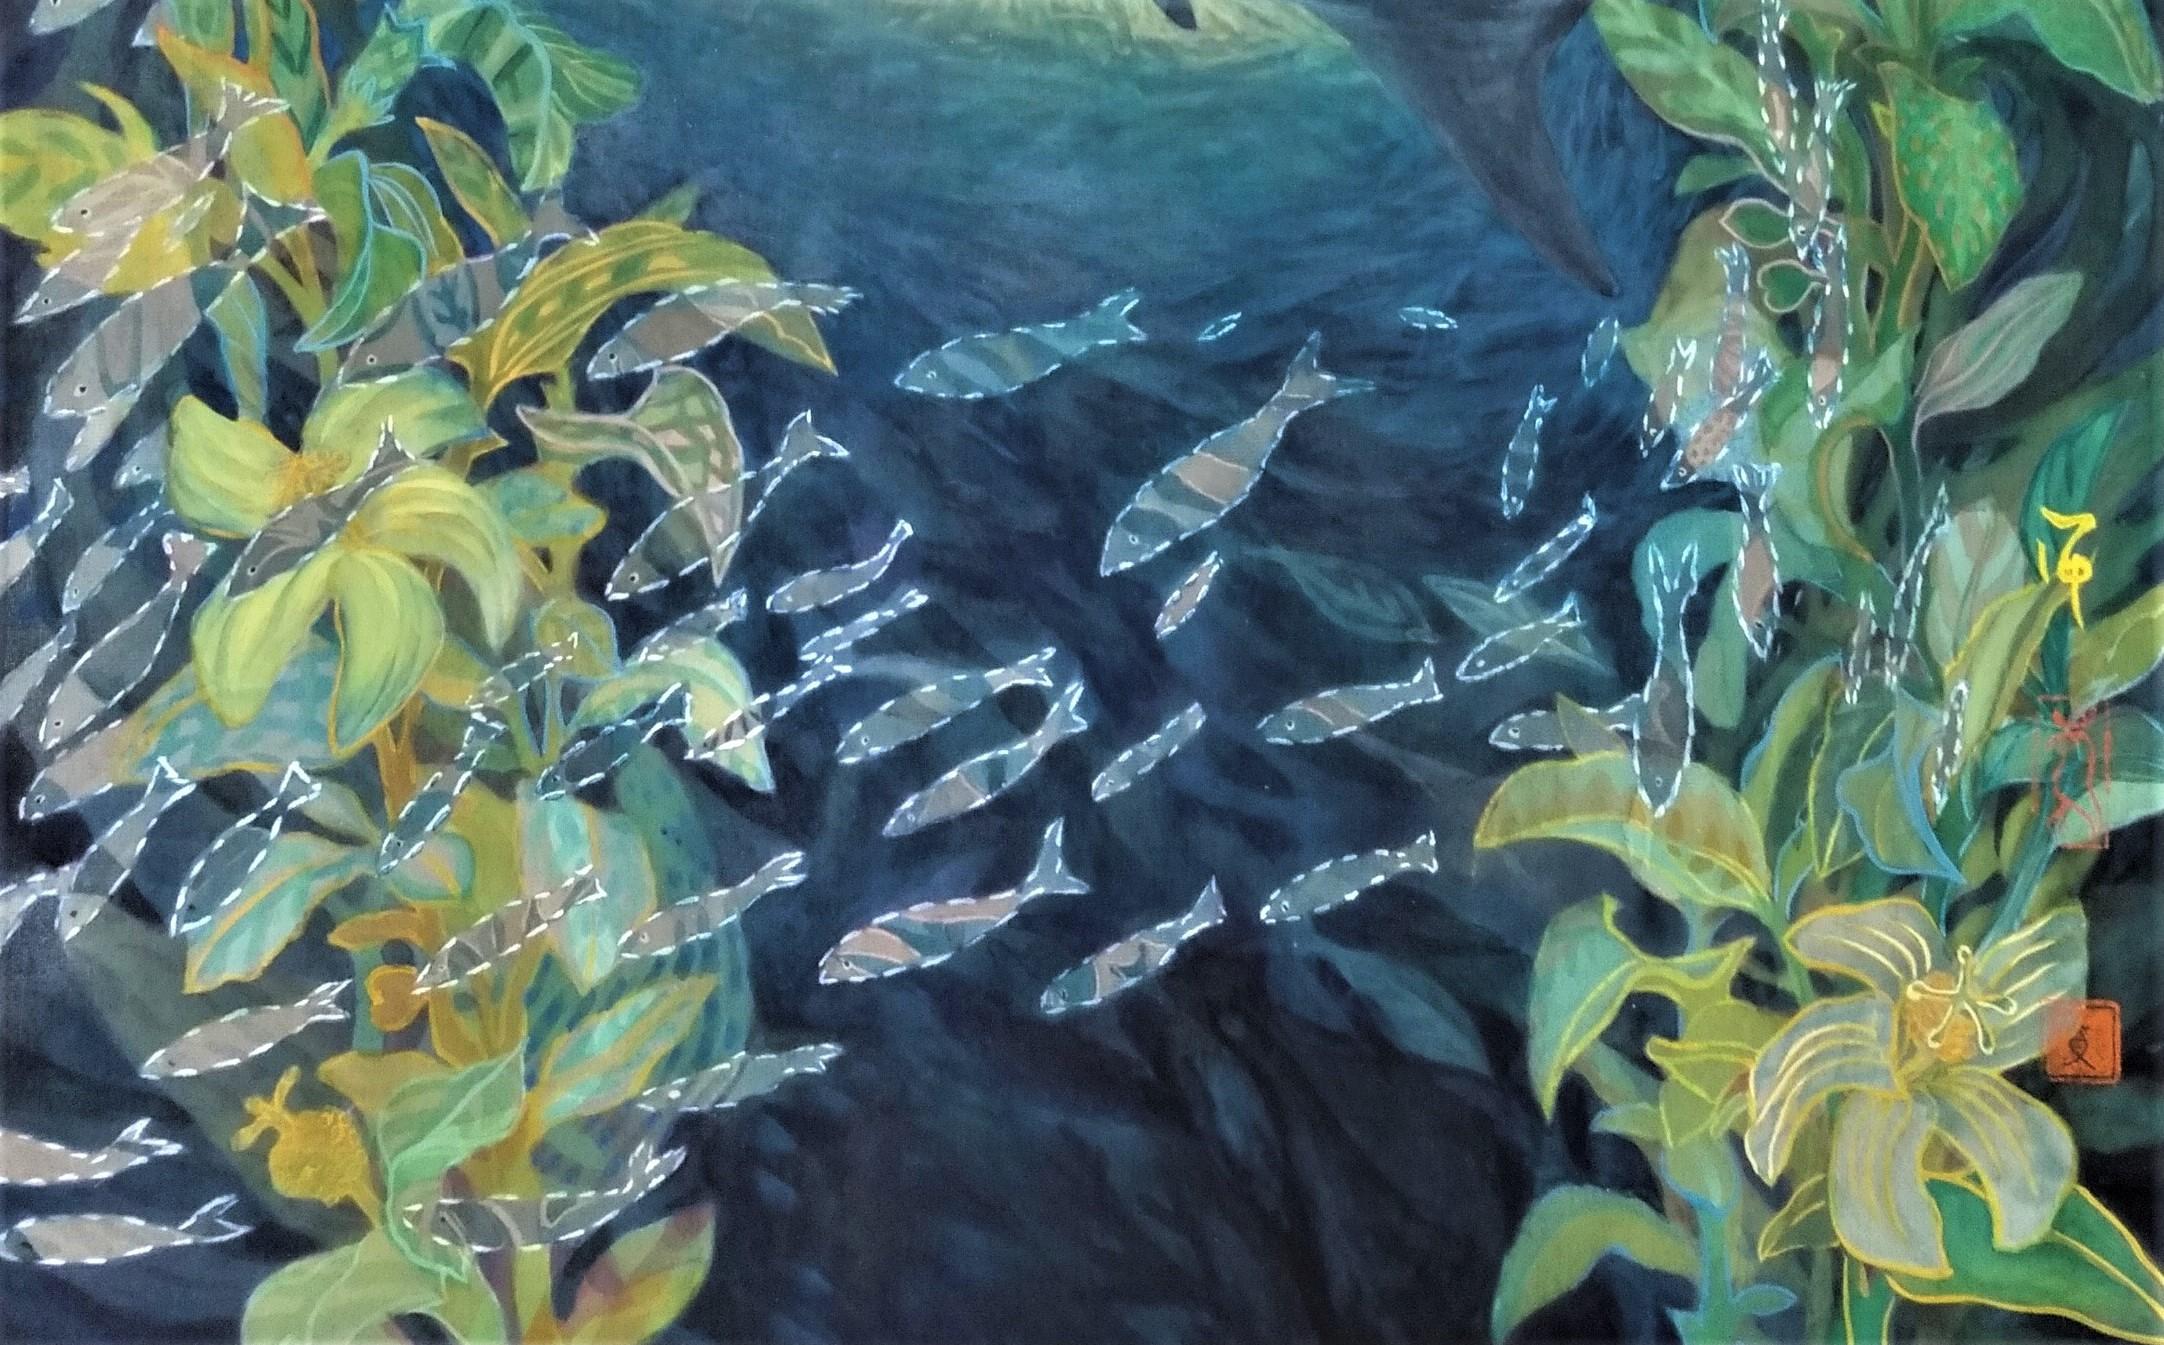 In a Forest of Fishes est l'œuvre de 2023 de Maki Kuchida. Maki peint avec des pigments minéraux naturels sur de la soie. L'œuvre évoque l'harmonie du monde marin où toutes les espèces de poissons peuvent vivre en toute liberté. 

La taille de